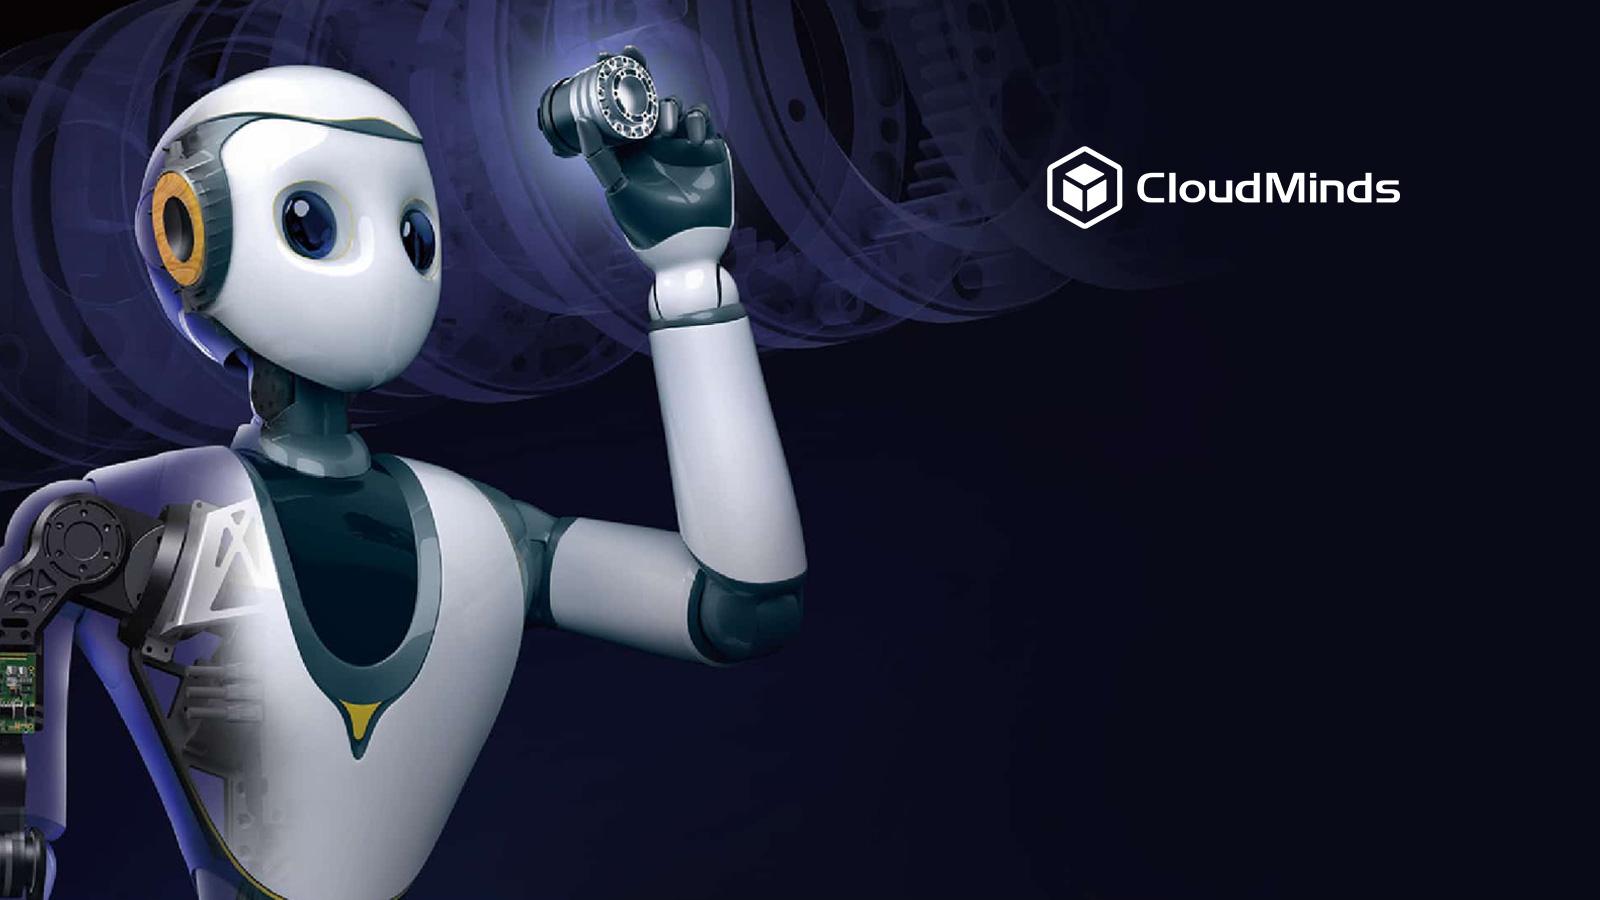 CloudMinds Technology Announces XR Robotics Development Kit